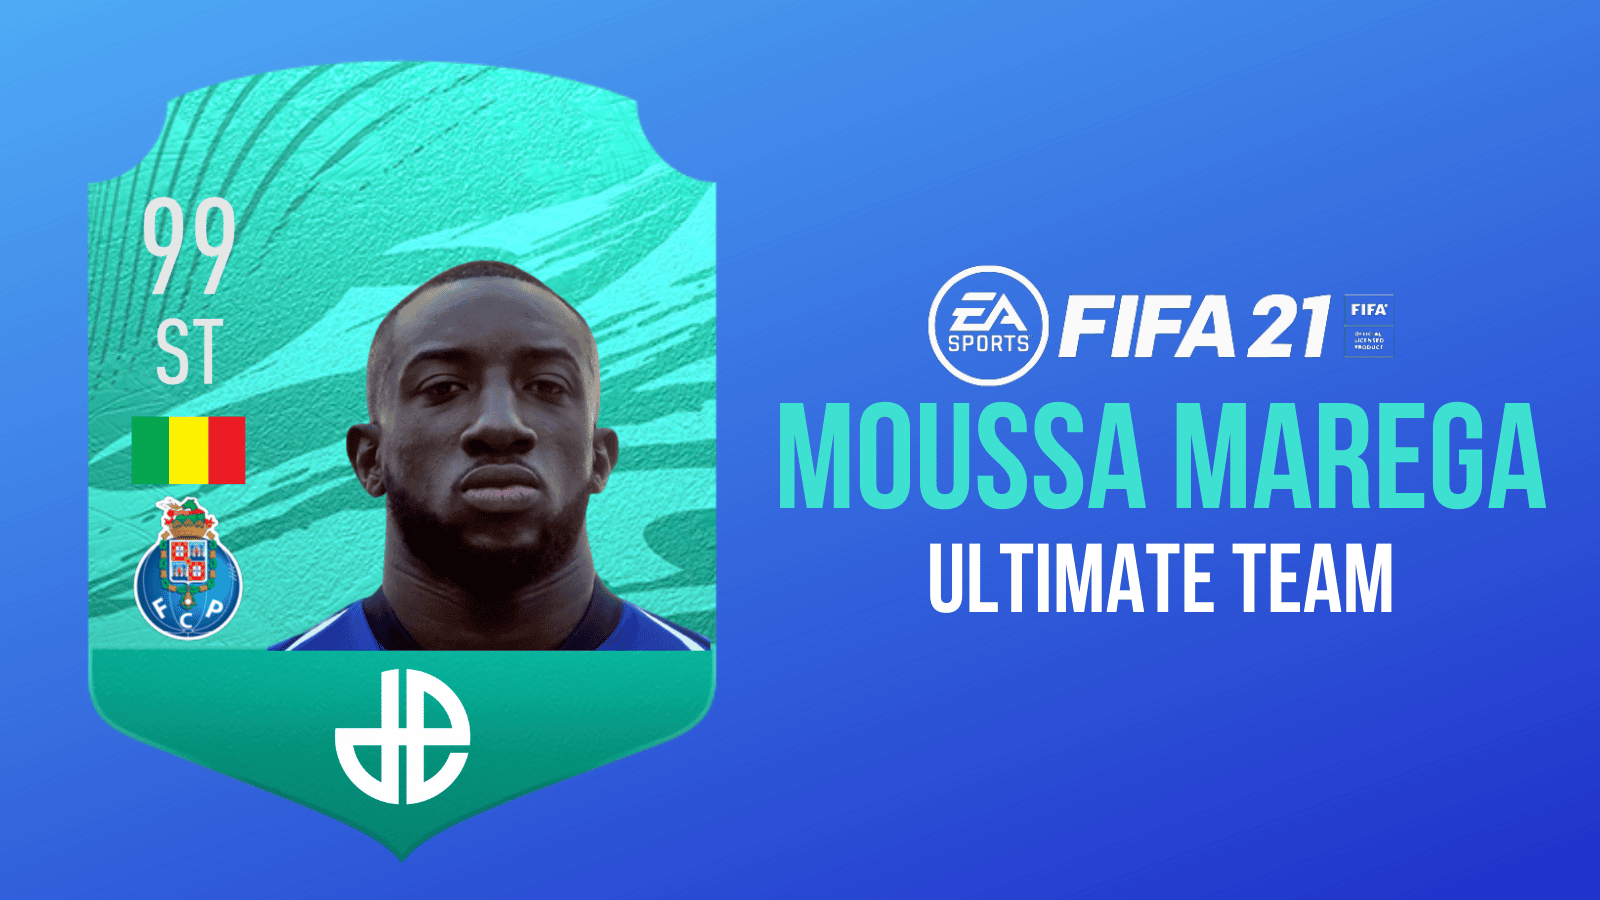 Moussa Marega Ultimate Team revealed